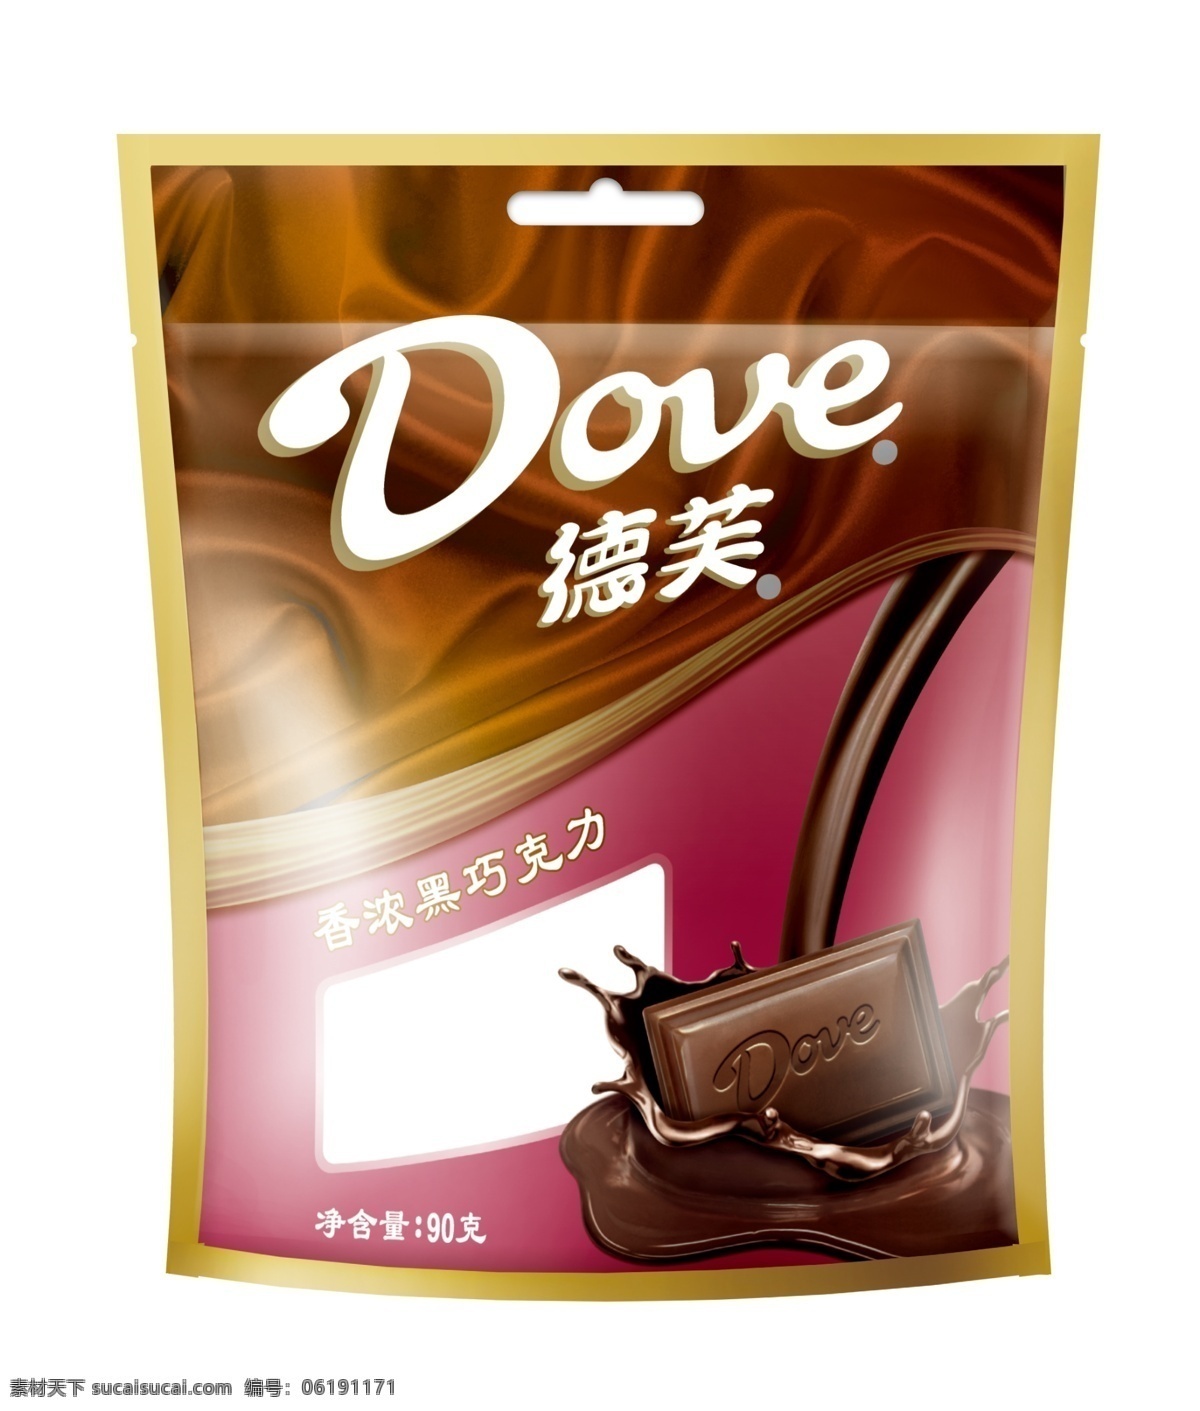 德芙包装 德芙 巧克力 包装 咖啡色 包装设计